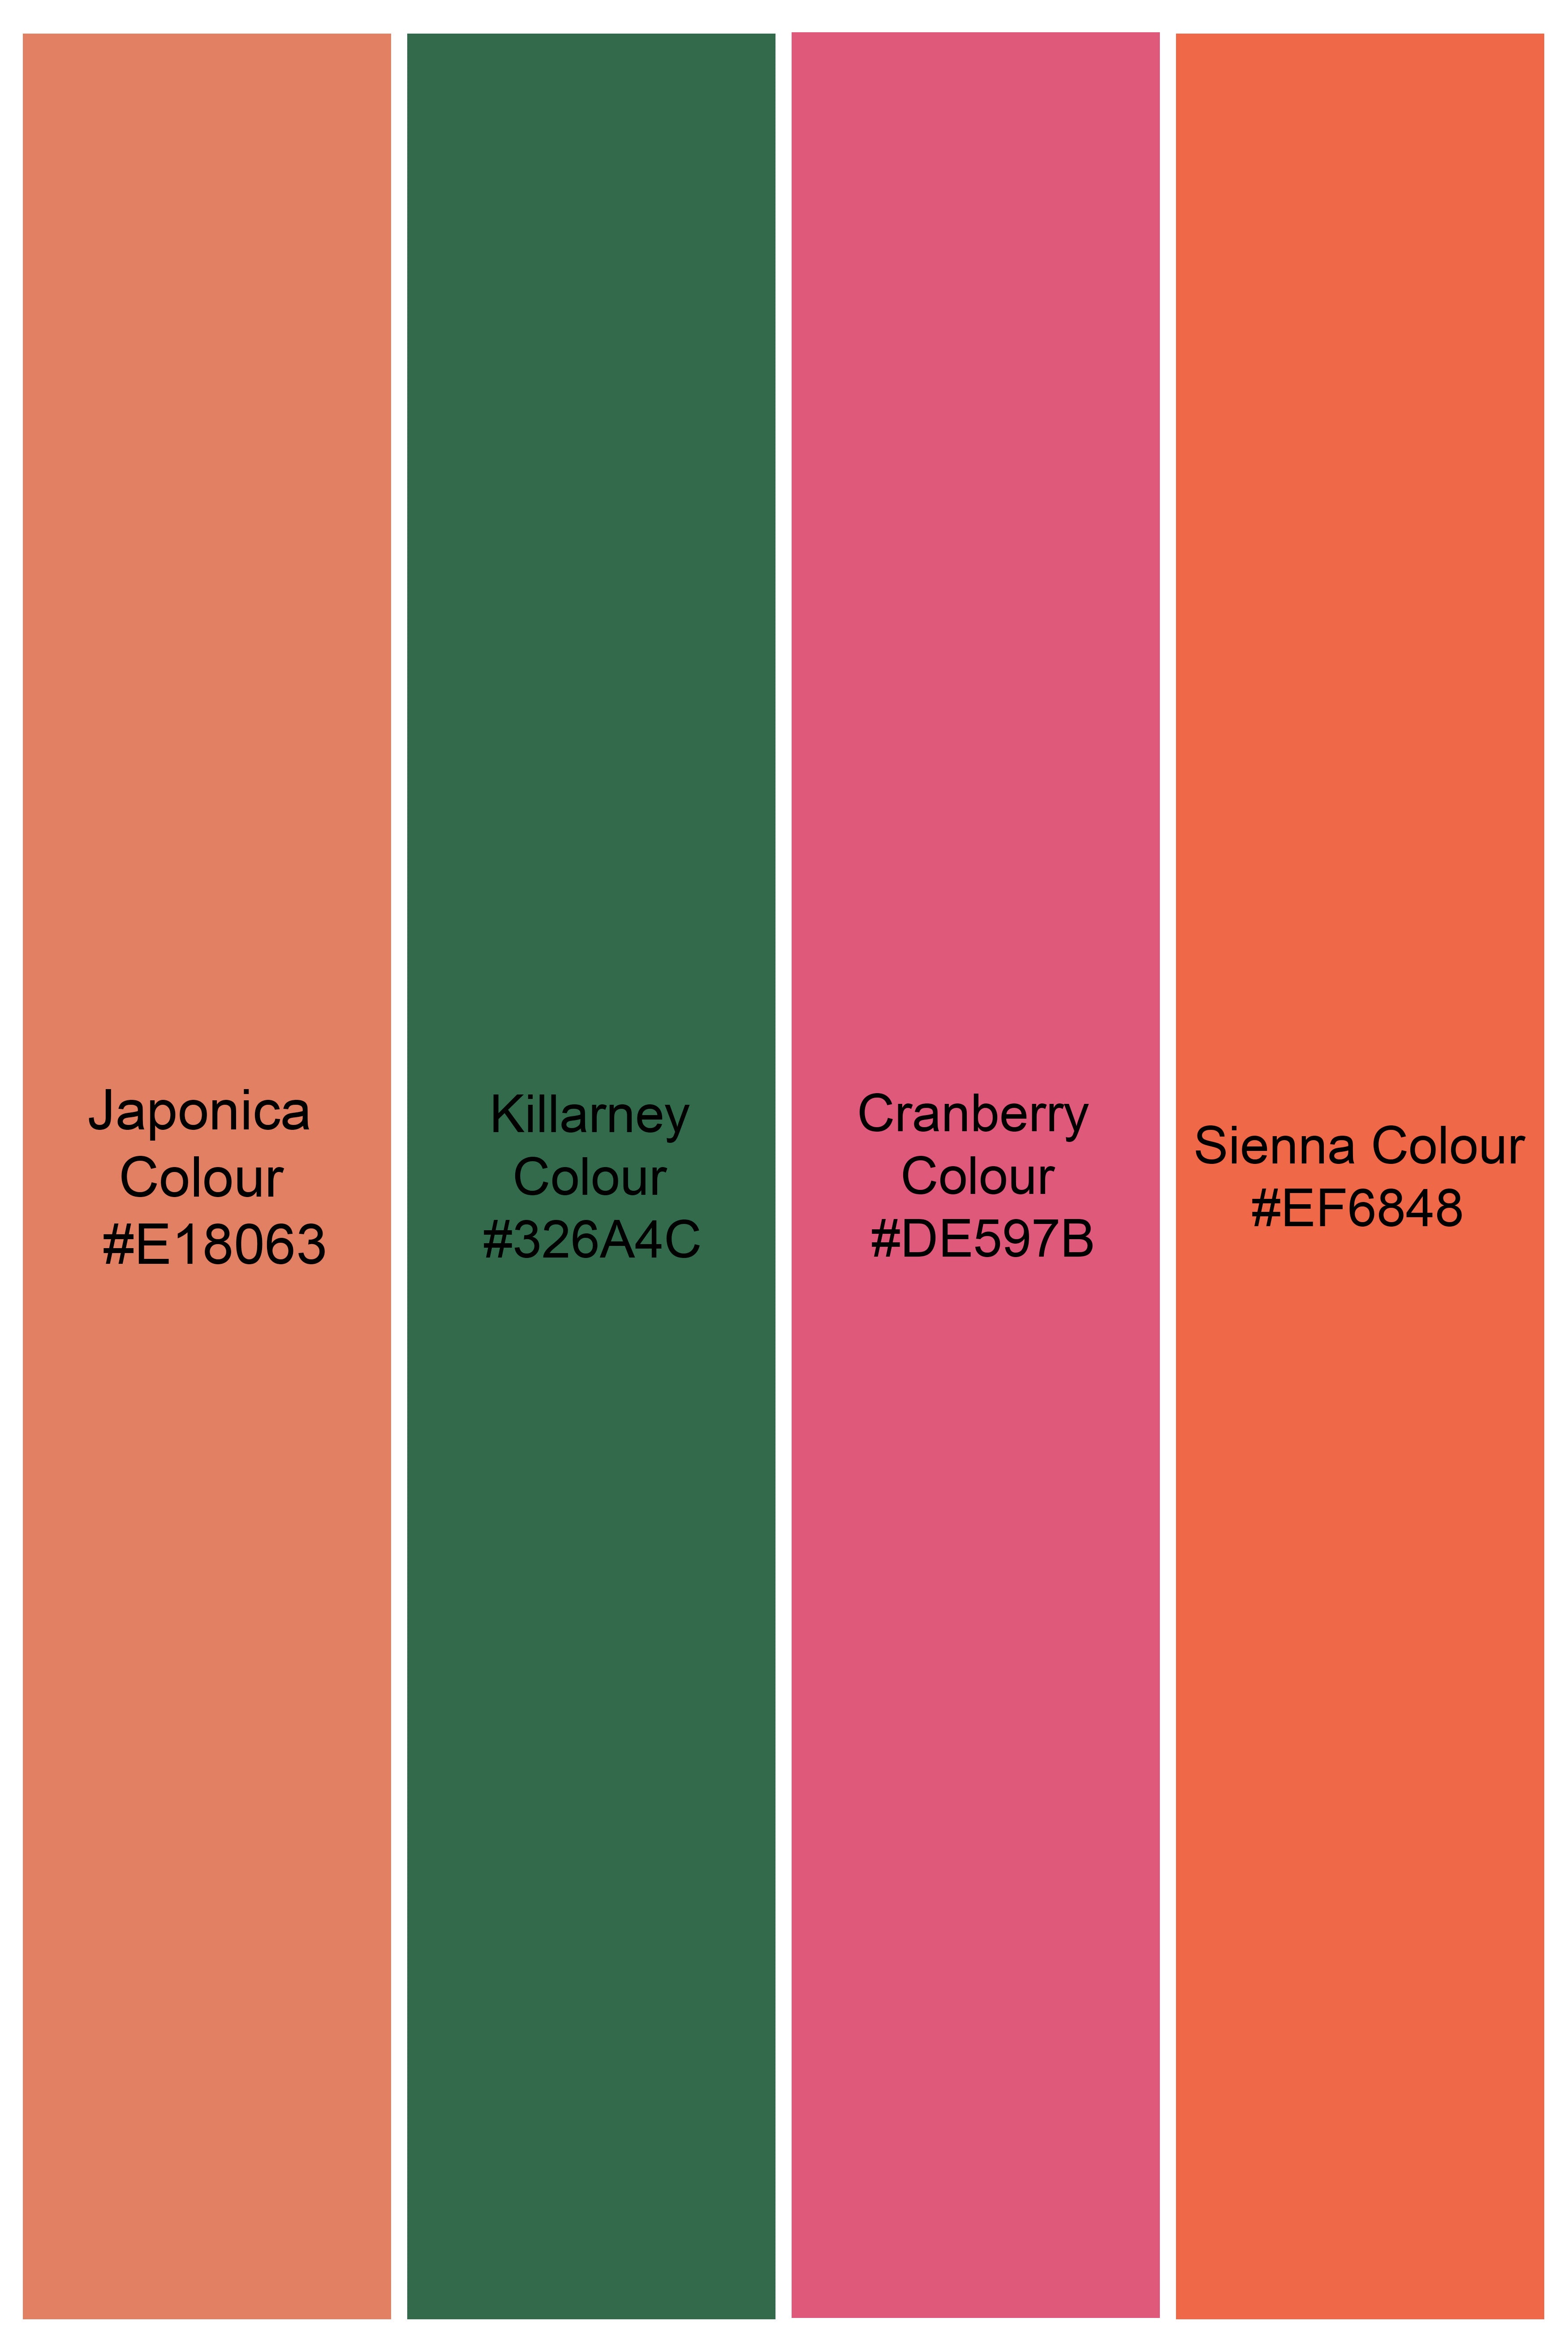 Japonica Orange Killarney Green Multicolour Tile Printed Subtle Sheen Super Soft Premium Cotton Shirt 11678-M-38, 11678-M-H-38, 11678-M-39, 11678-M-H-39, 11678-M-40, 11678-M-H-40, 11678-M-42, 11678-M-H-42, 11678-M-44, 11678-M-H-44, 11678-M-46, 11678-M-H-46, 11678-M-48, 11678-M-H-48, 11678-M-50, 11678-M-H-50, 11678-M-52, 11678-M-H-52